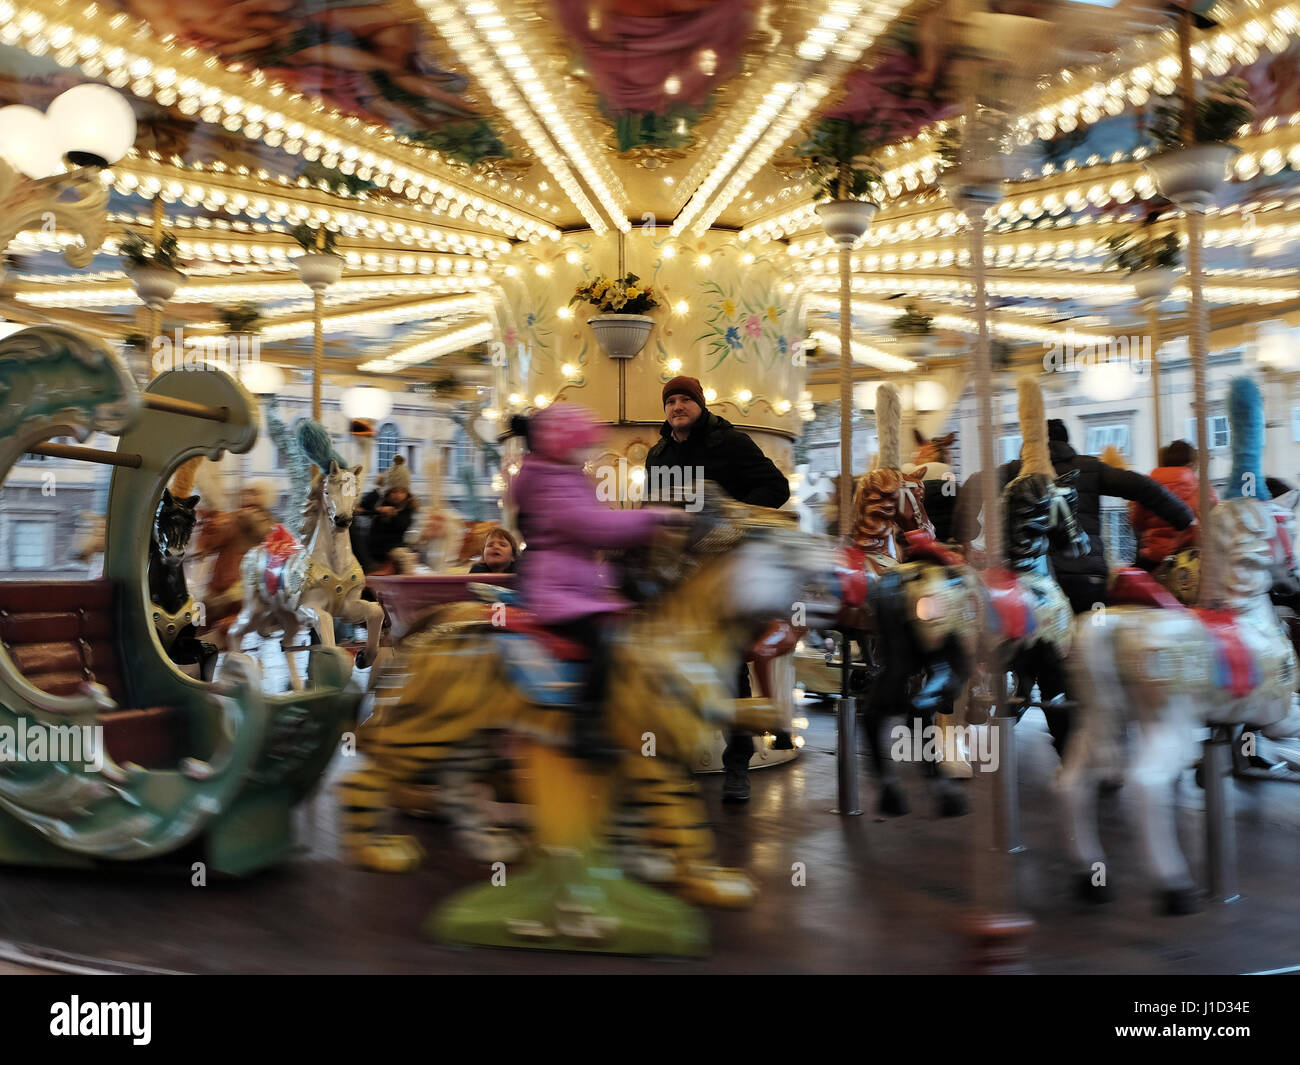 Giostra di movimentazione - Carny - merry-go-round di girare intorno alla rotatoria, attendant congelata in un colorato sfondo - Lucca, Toscana, Italia, Europa Foto Stock